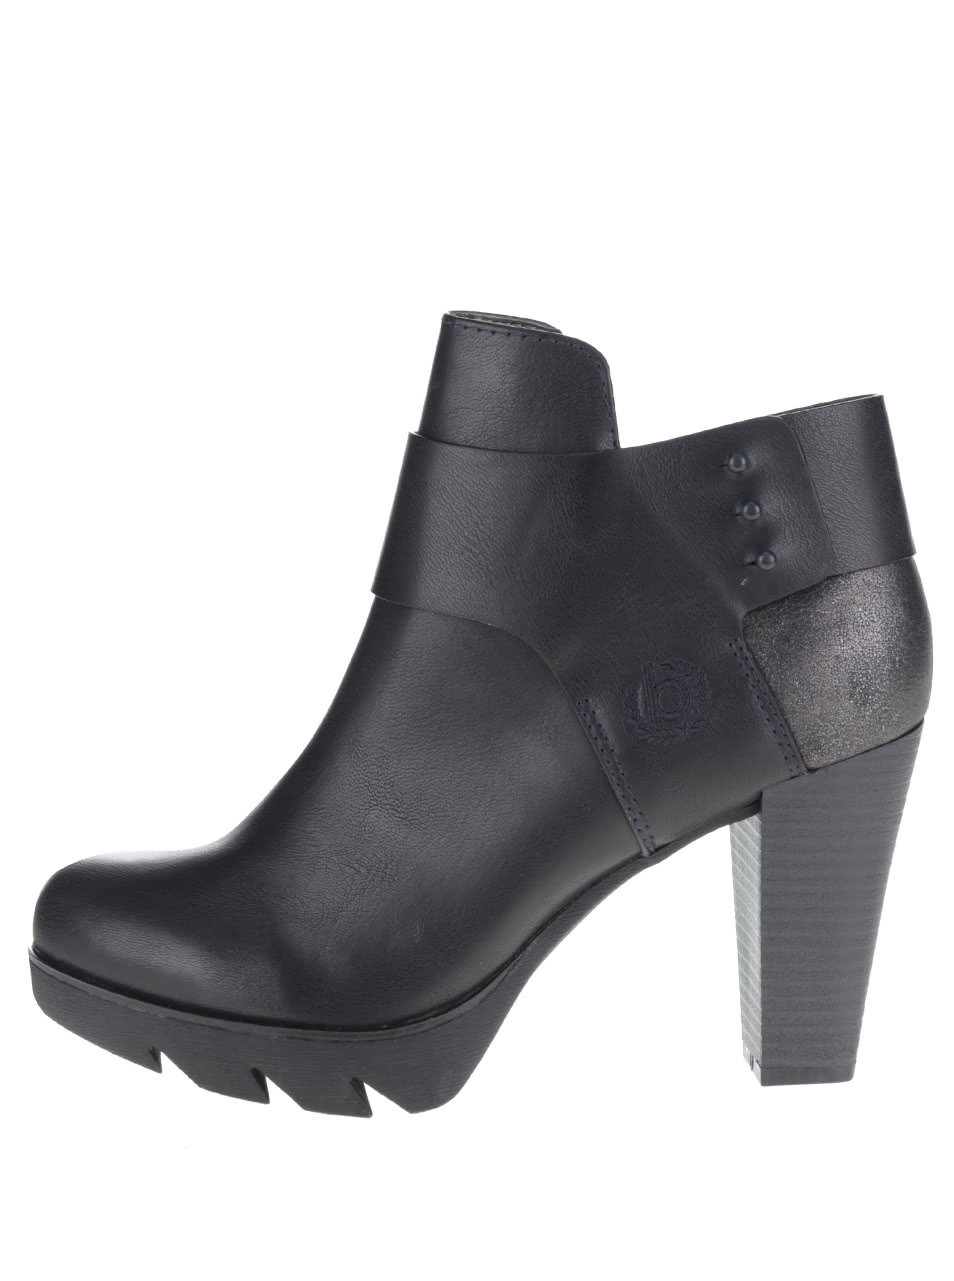 Černé dámské kotníkové boty na podpatku bugatti Elenor Evo